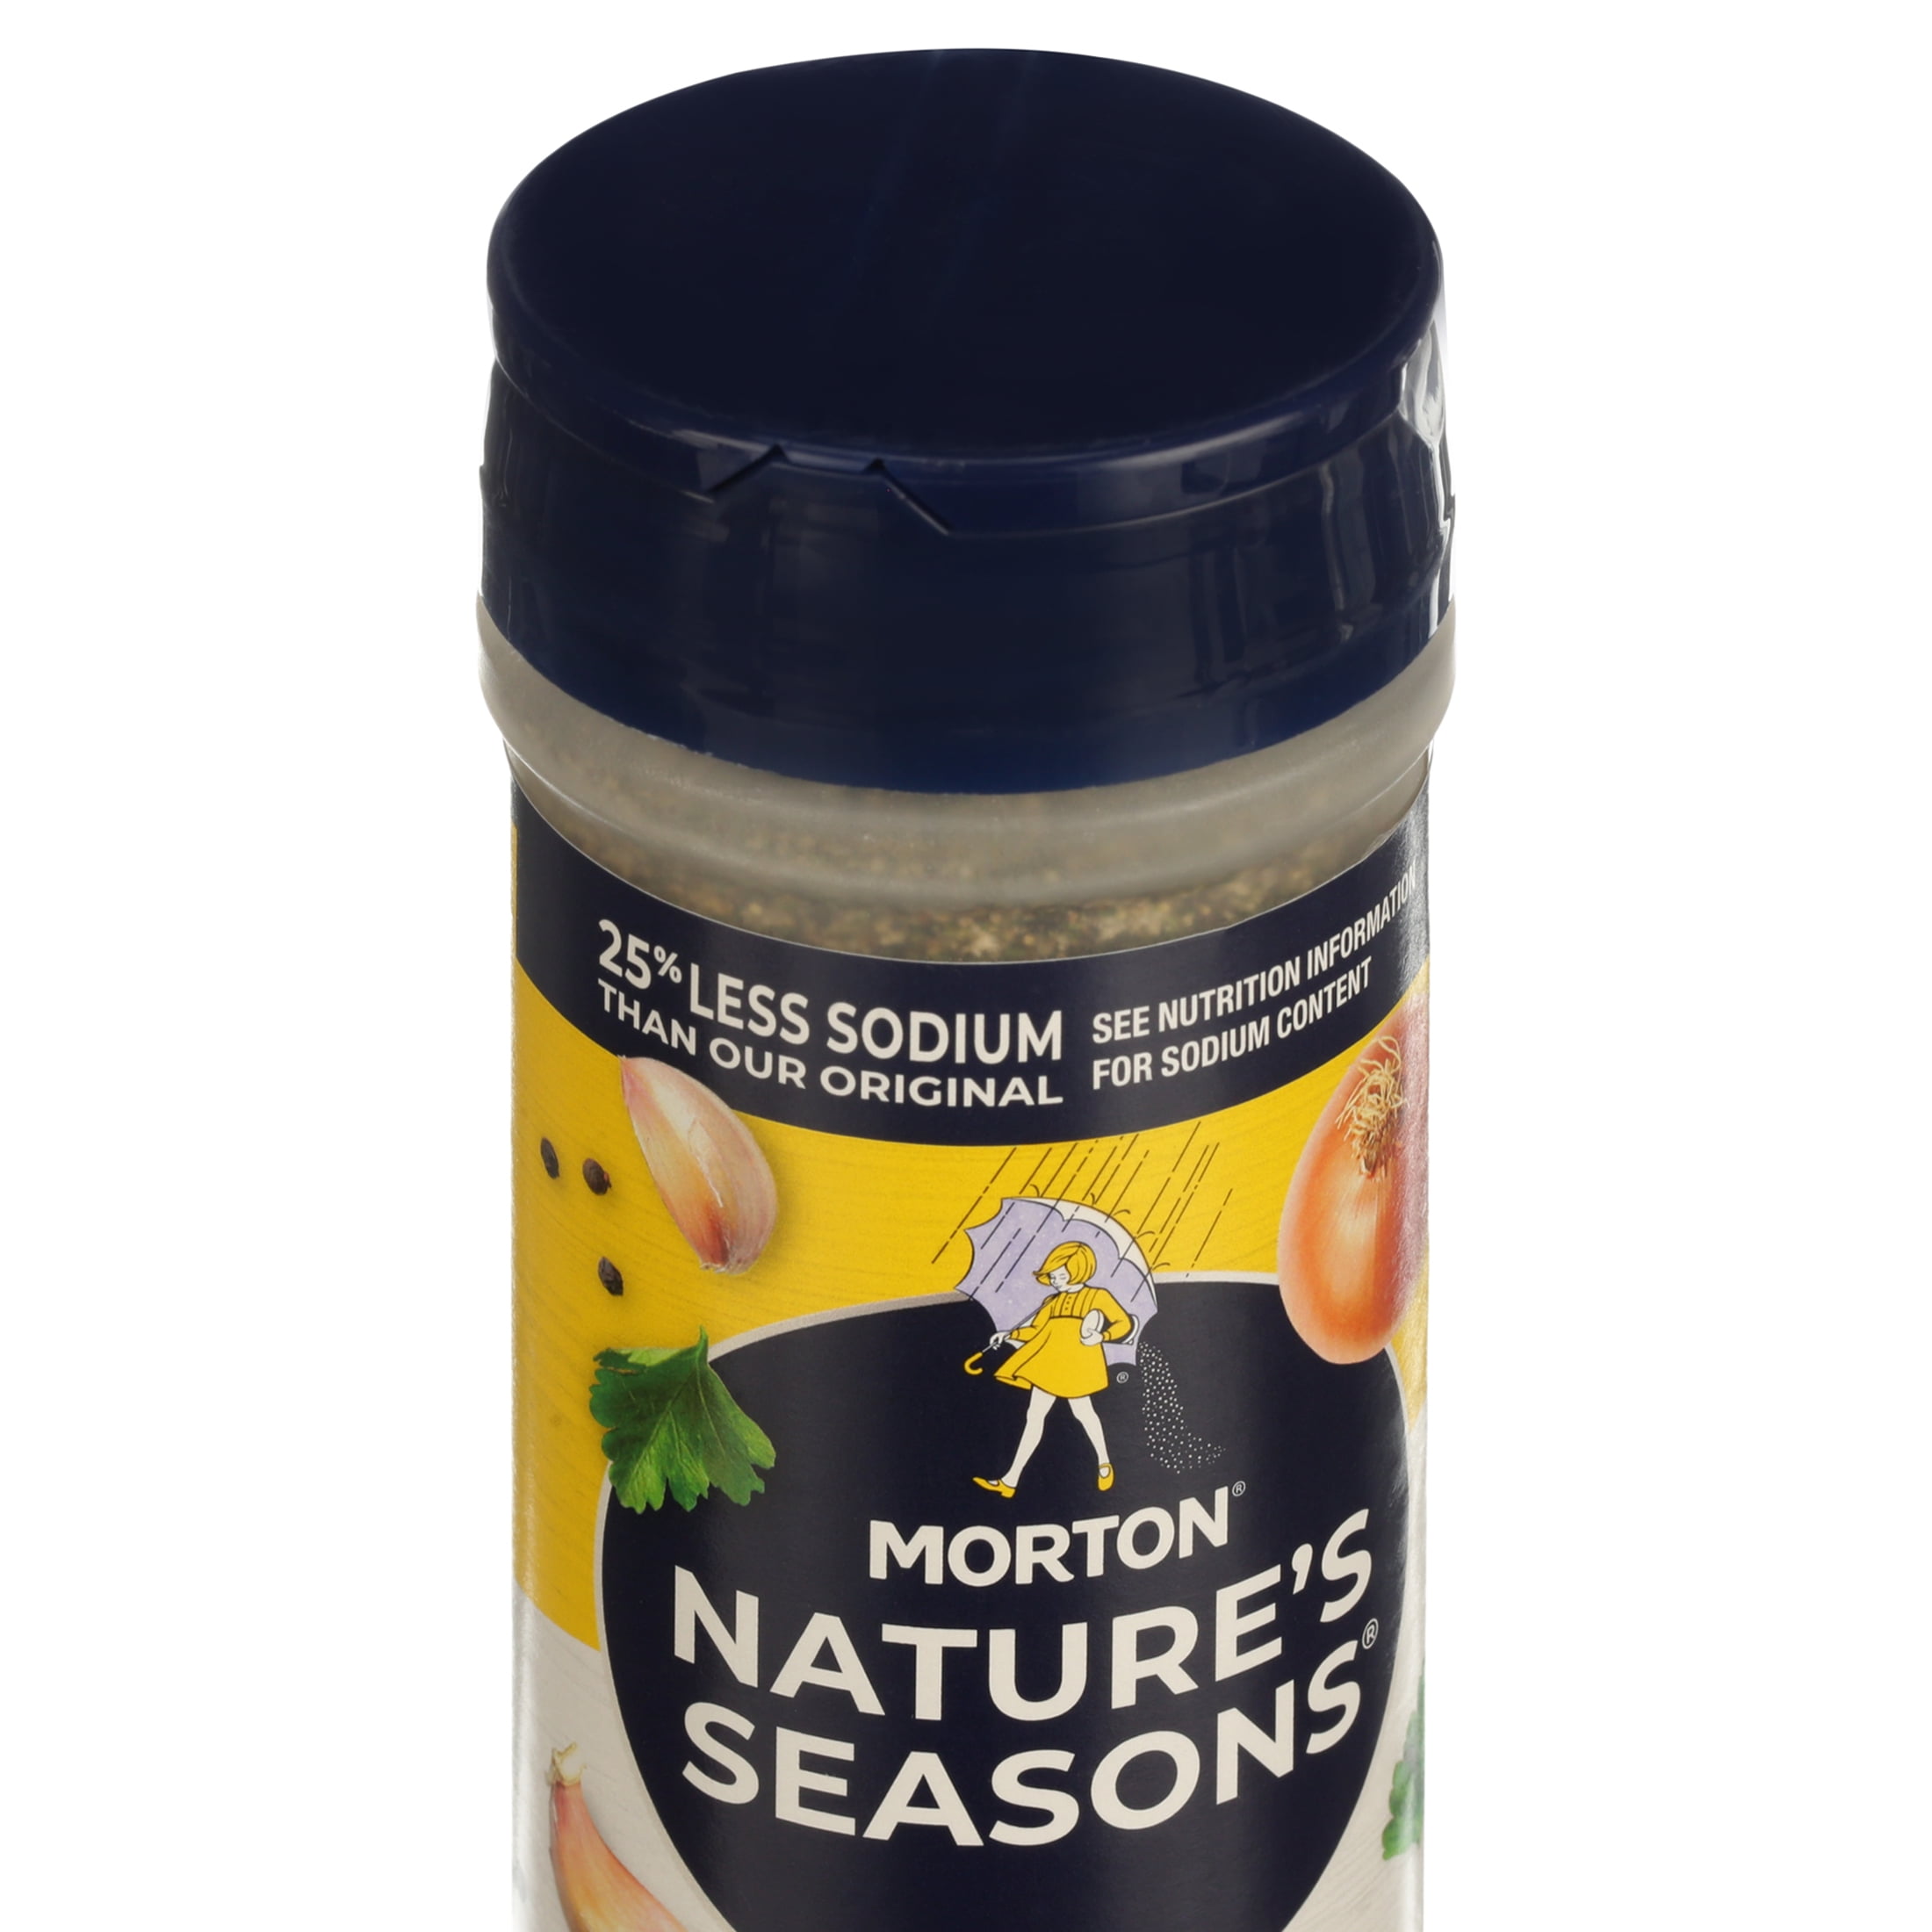 Top 25 Salt Free Seasoning Blends